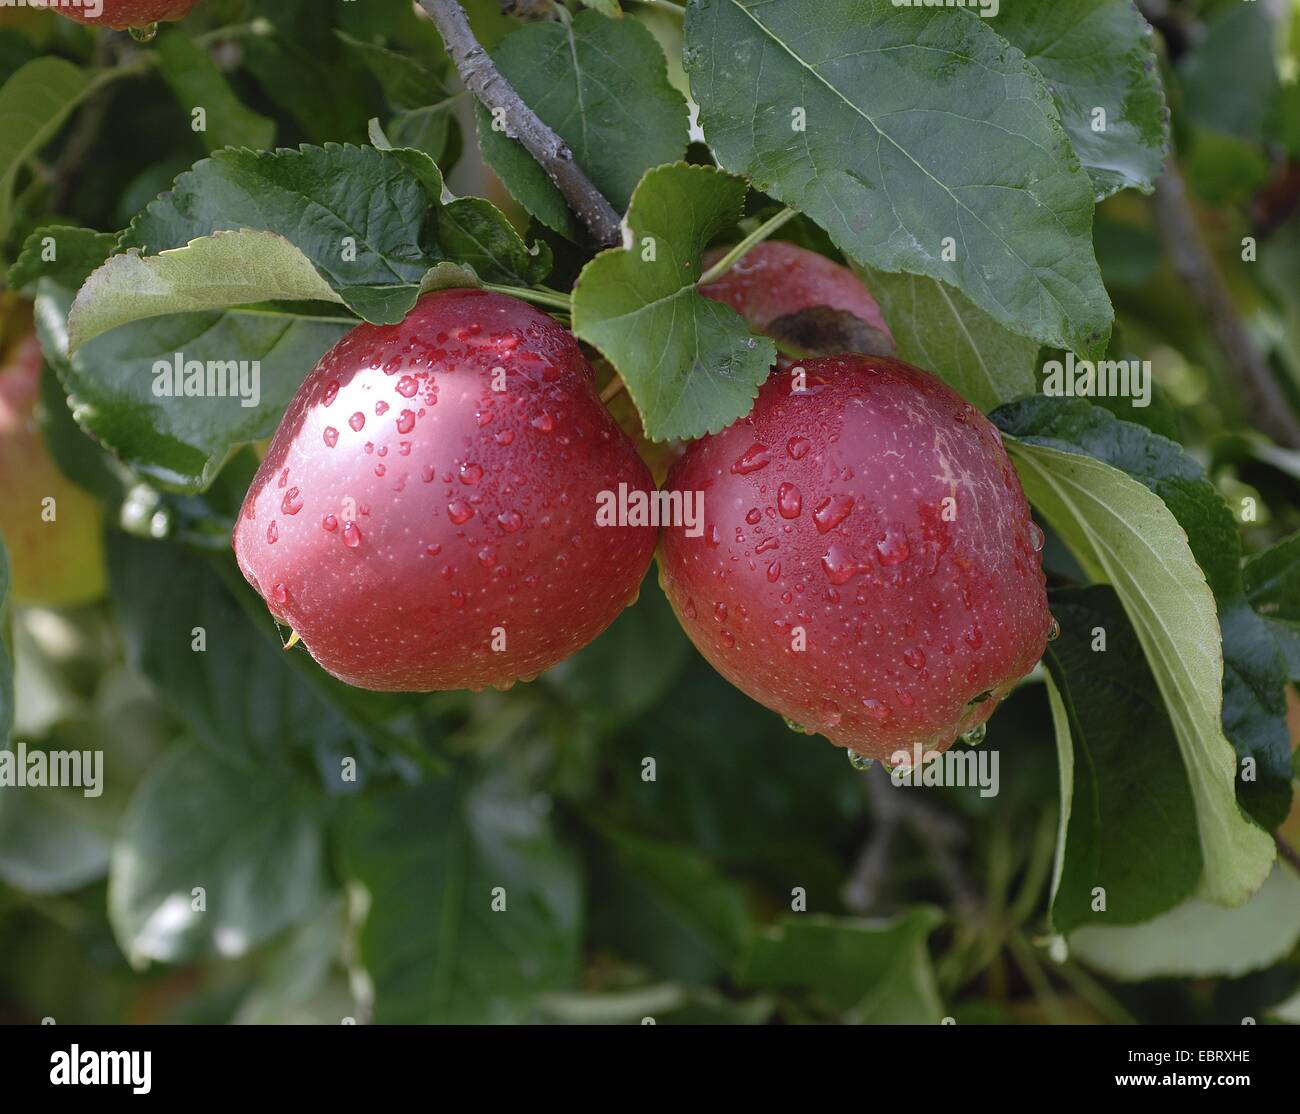 Melo (Malus domestica 'Saturn', Malus domestica Saturno), cultivar Saturno, le mele su un albero Foto Stock